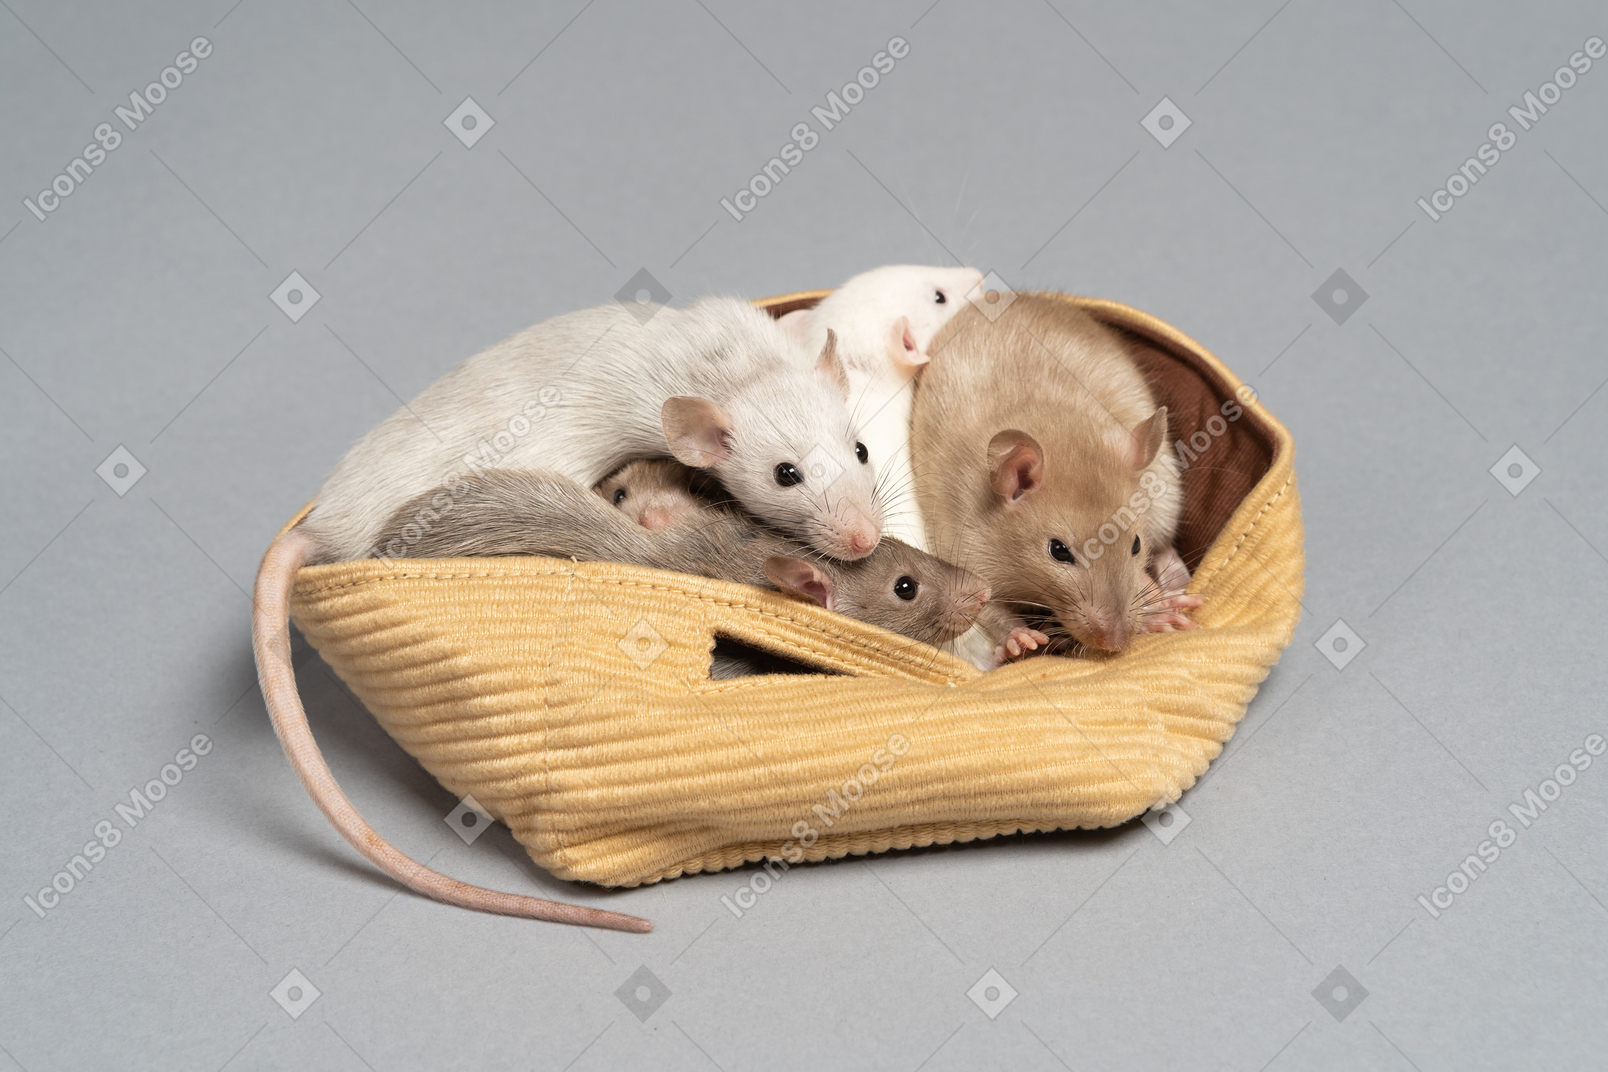 Ein haufen süßer mäuse, die in einer gelben tasche sitzen